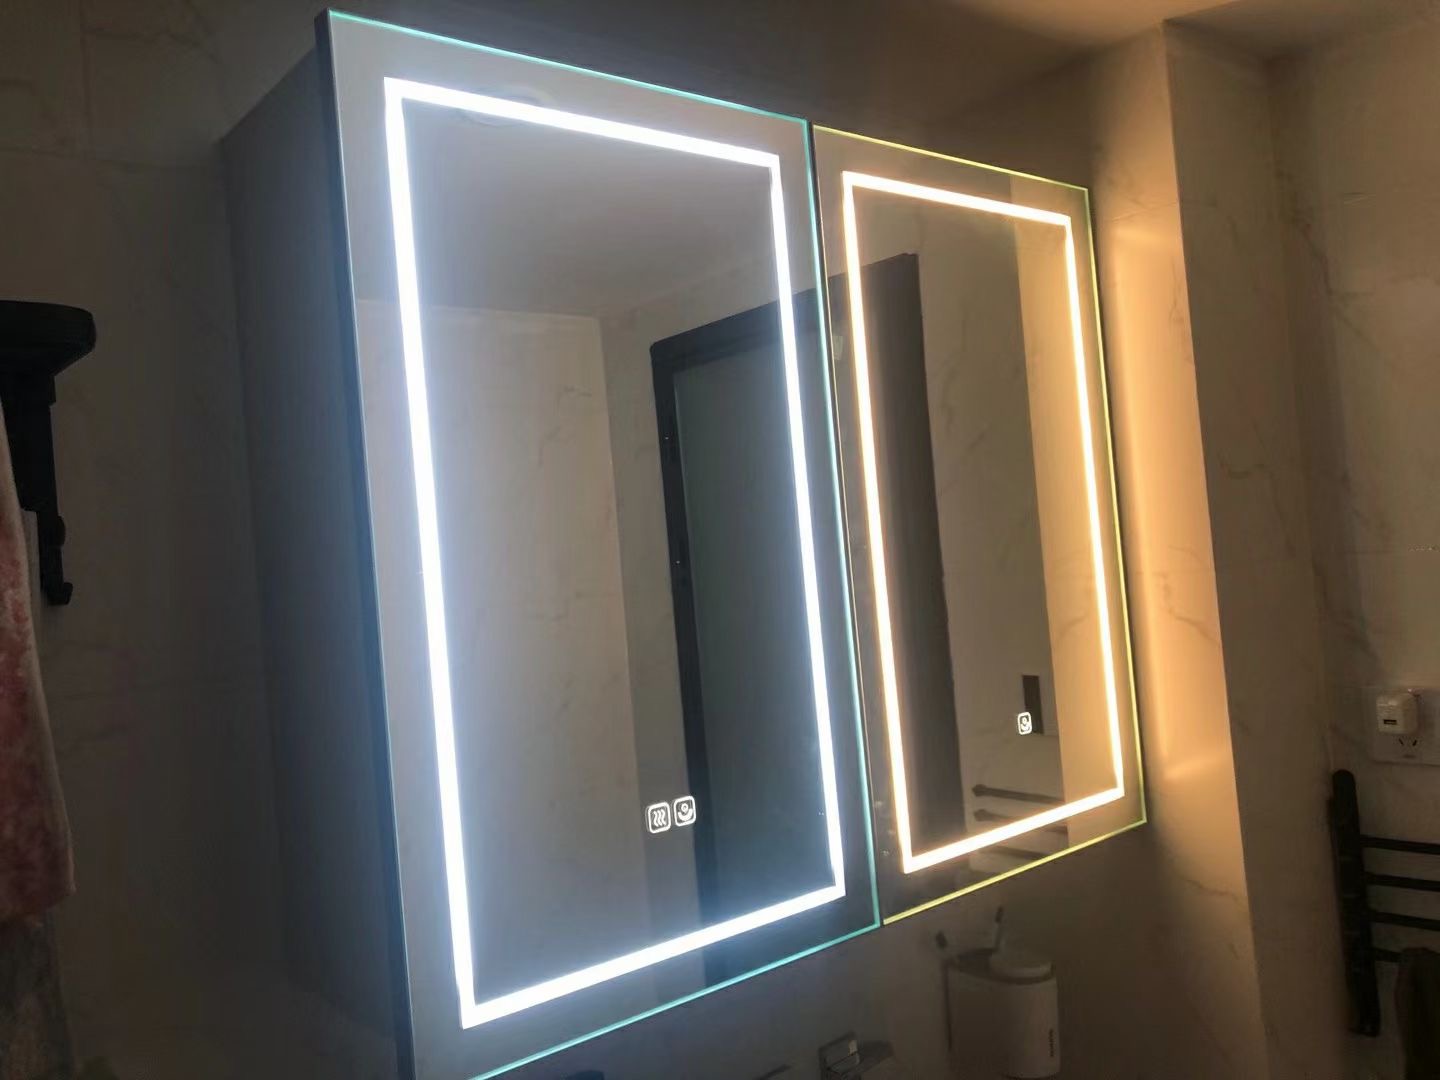 Představení chytrého zrcadla do koupelny